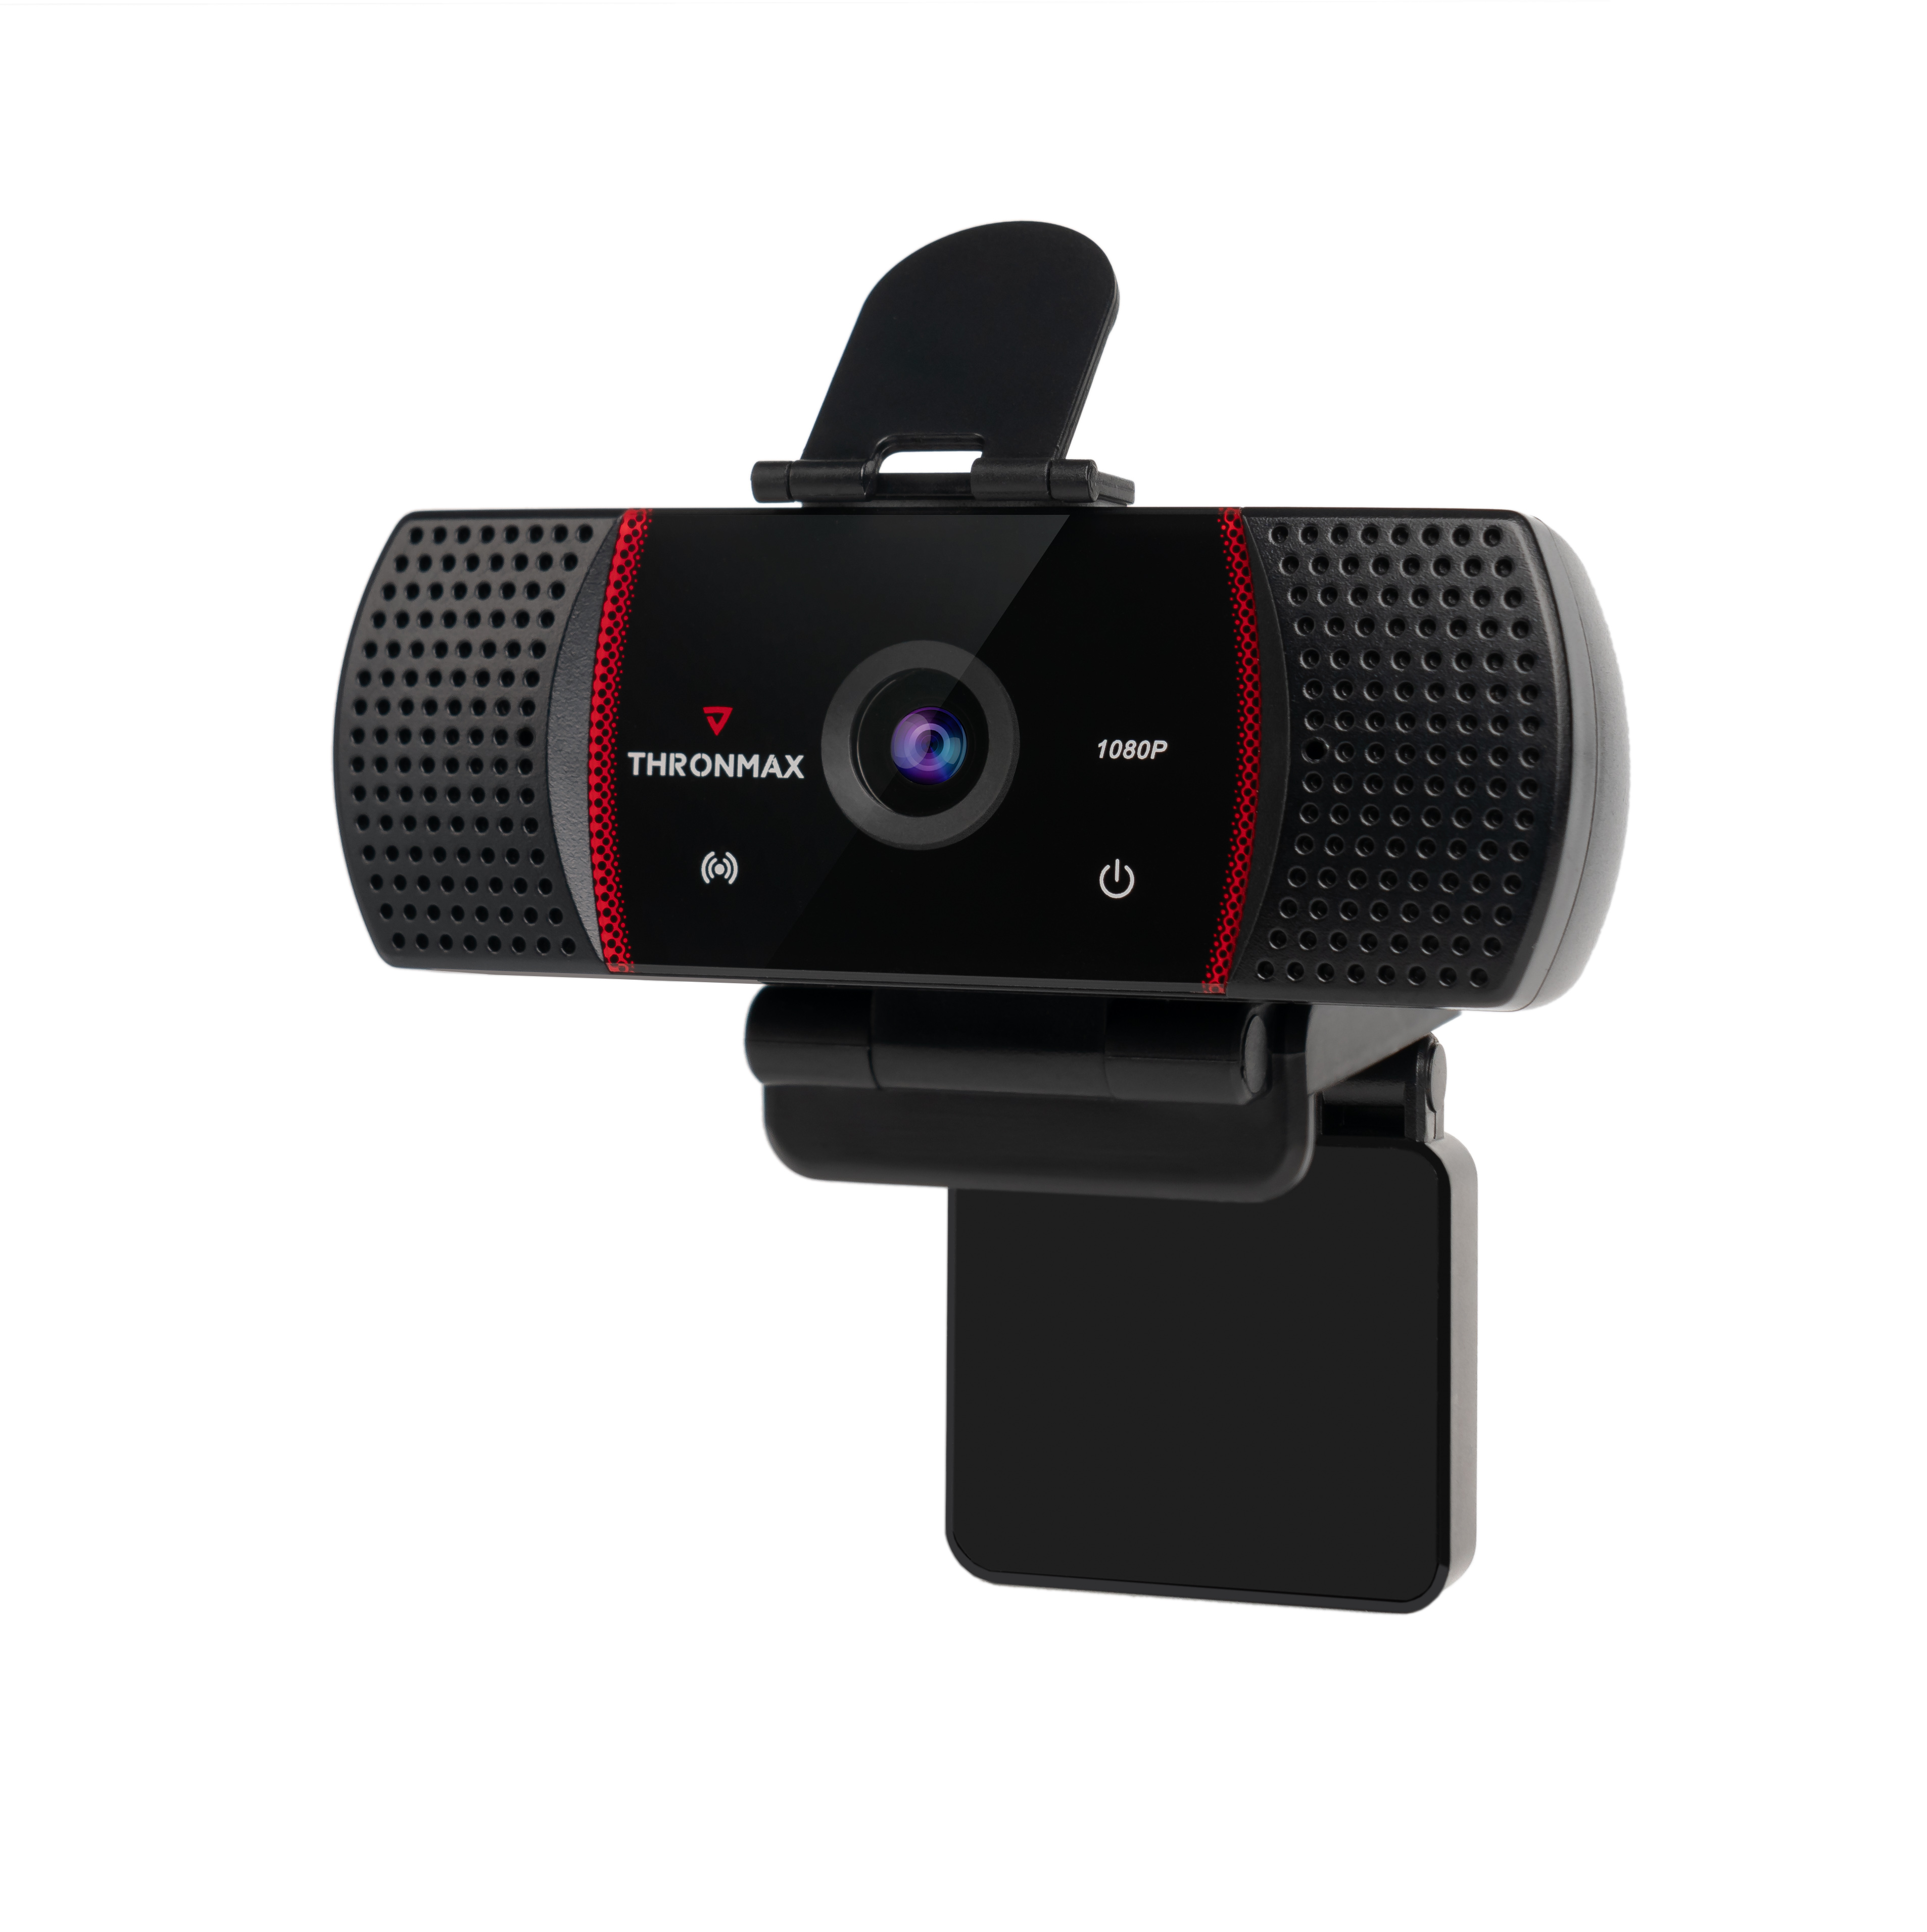 Webcam Thronmax Stream Go X1 Pro Hàng Chính Hãng